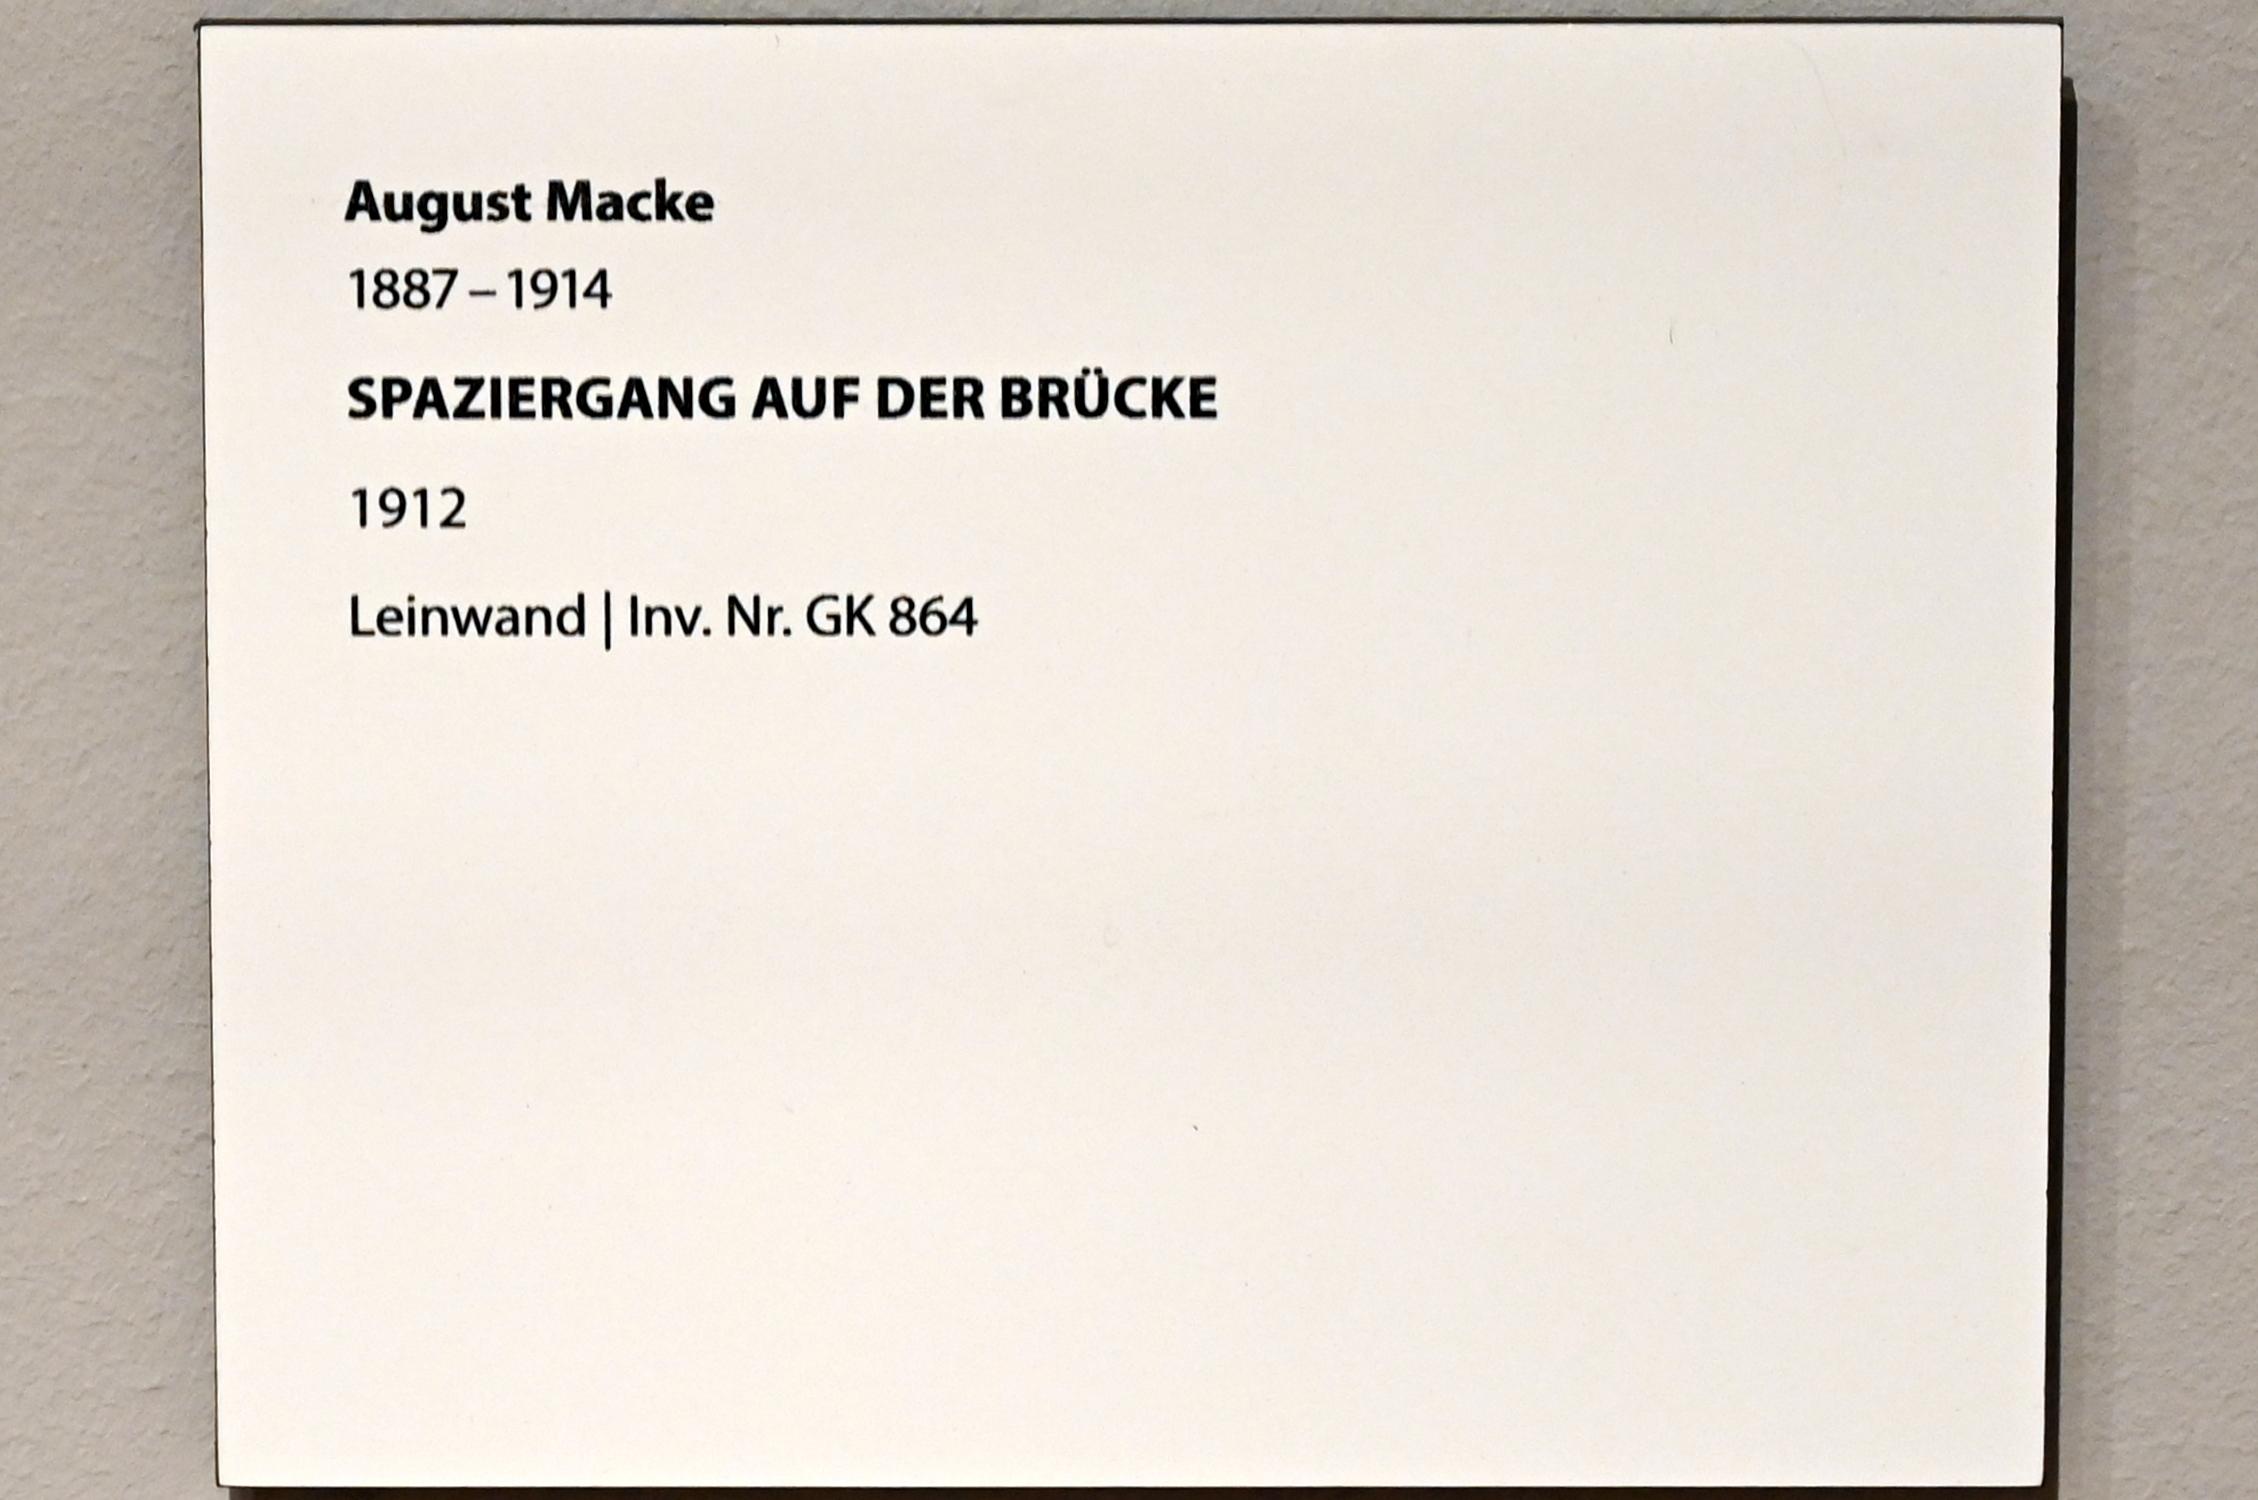 August Macke (1907–1914), Spaziergang auf der Brücke, Darmstadt, Hessisches Landesmuseum, Saal 7, 1912, Bild 2/2